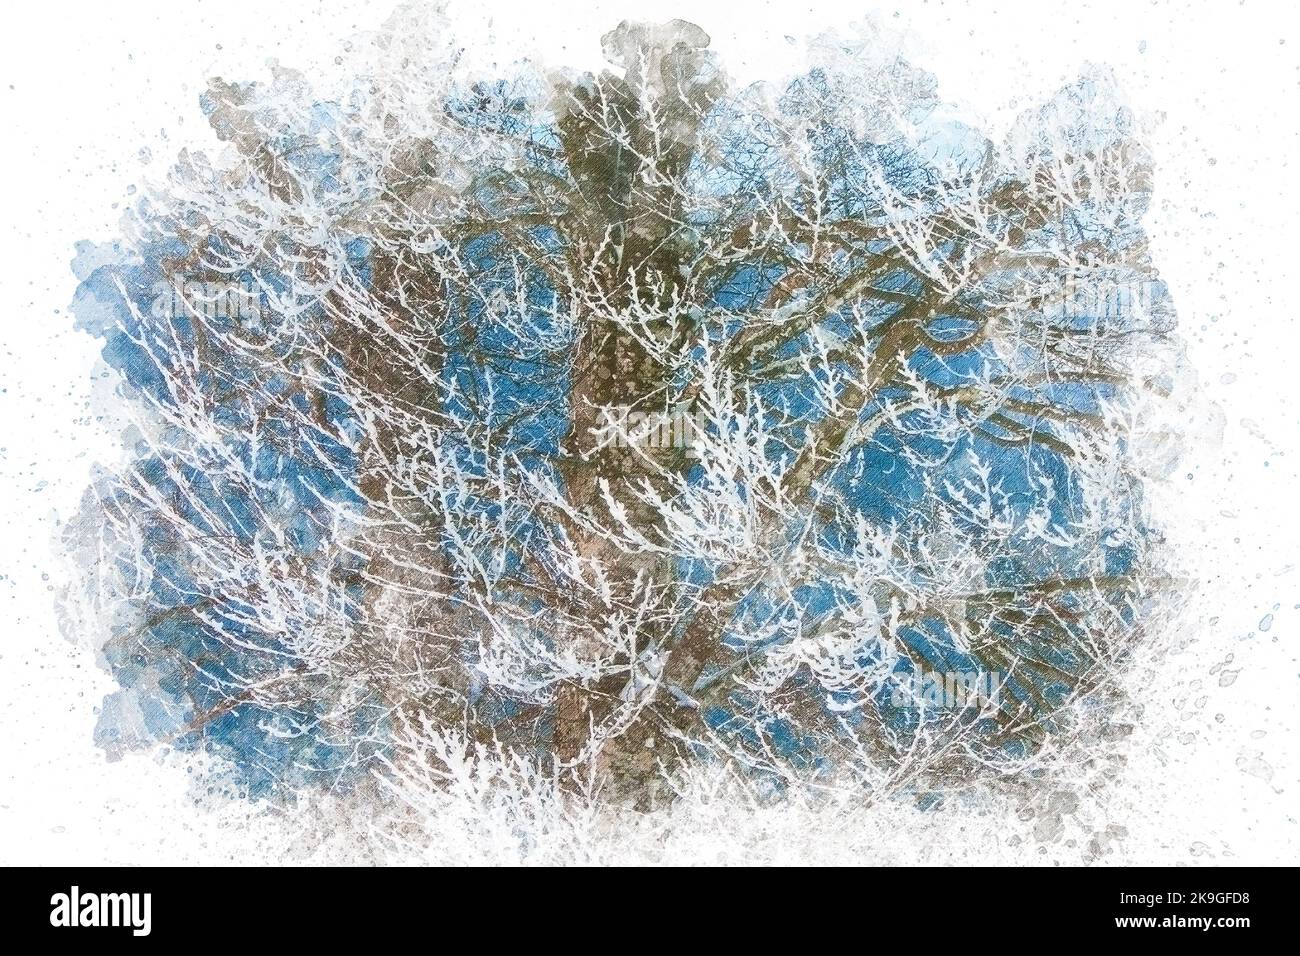 Aquarell Malerei Illustration von schneebedeckten Baum mit gefrorenen Ästen. Winterhintergrund Stockfoto